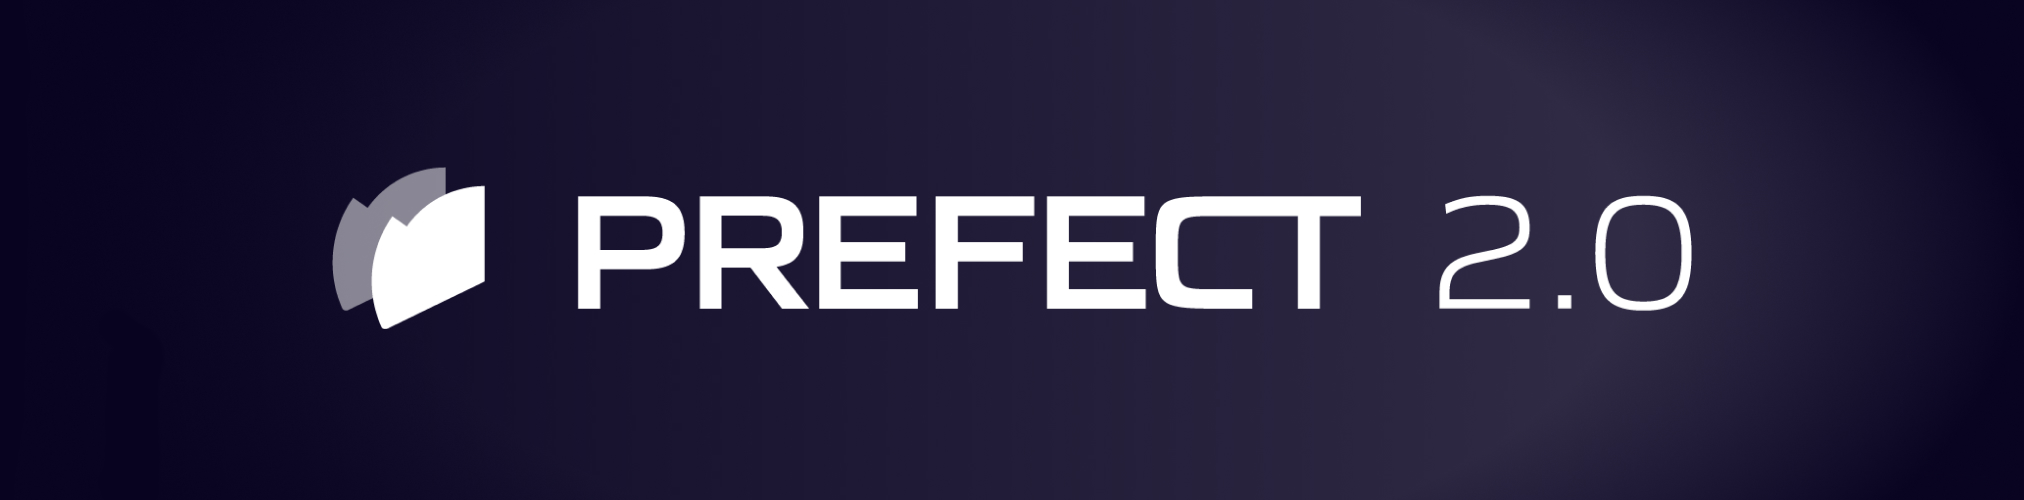 Prefect 2.0 logo